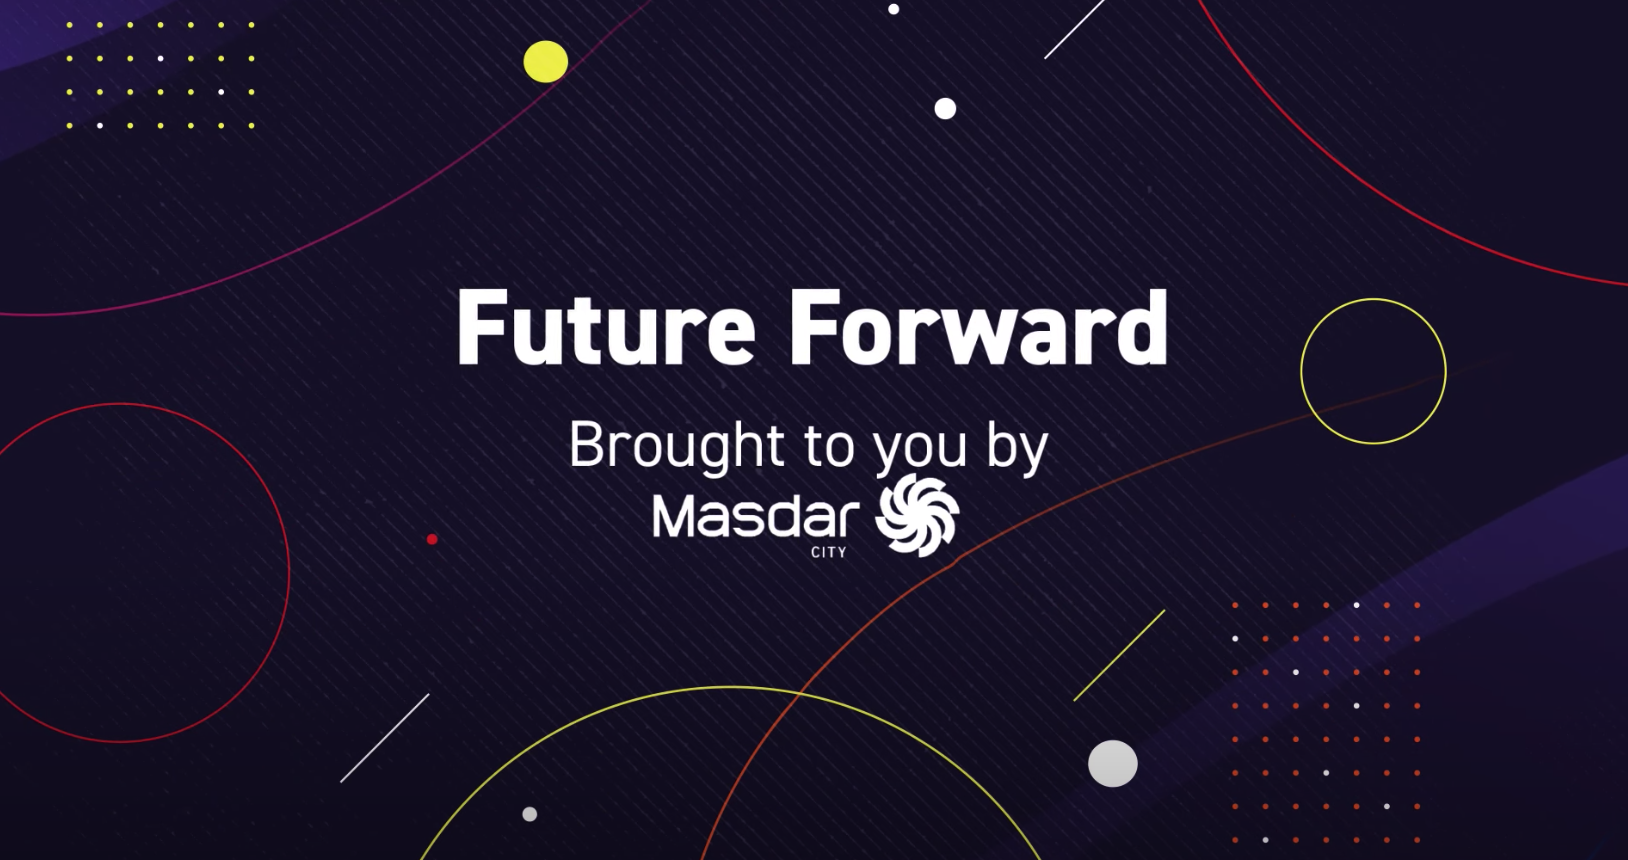 Future Forward by Masdar City